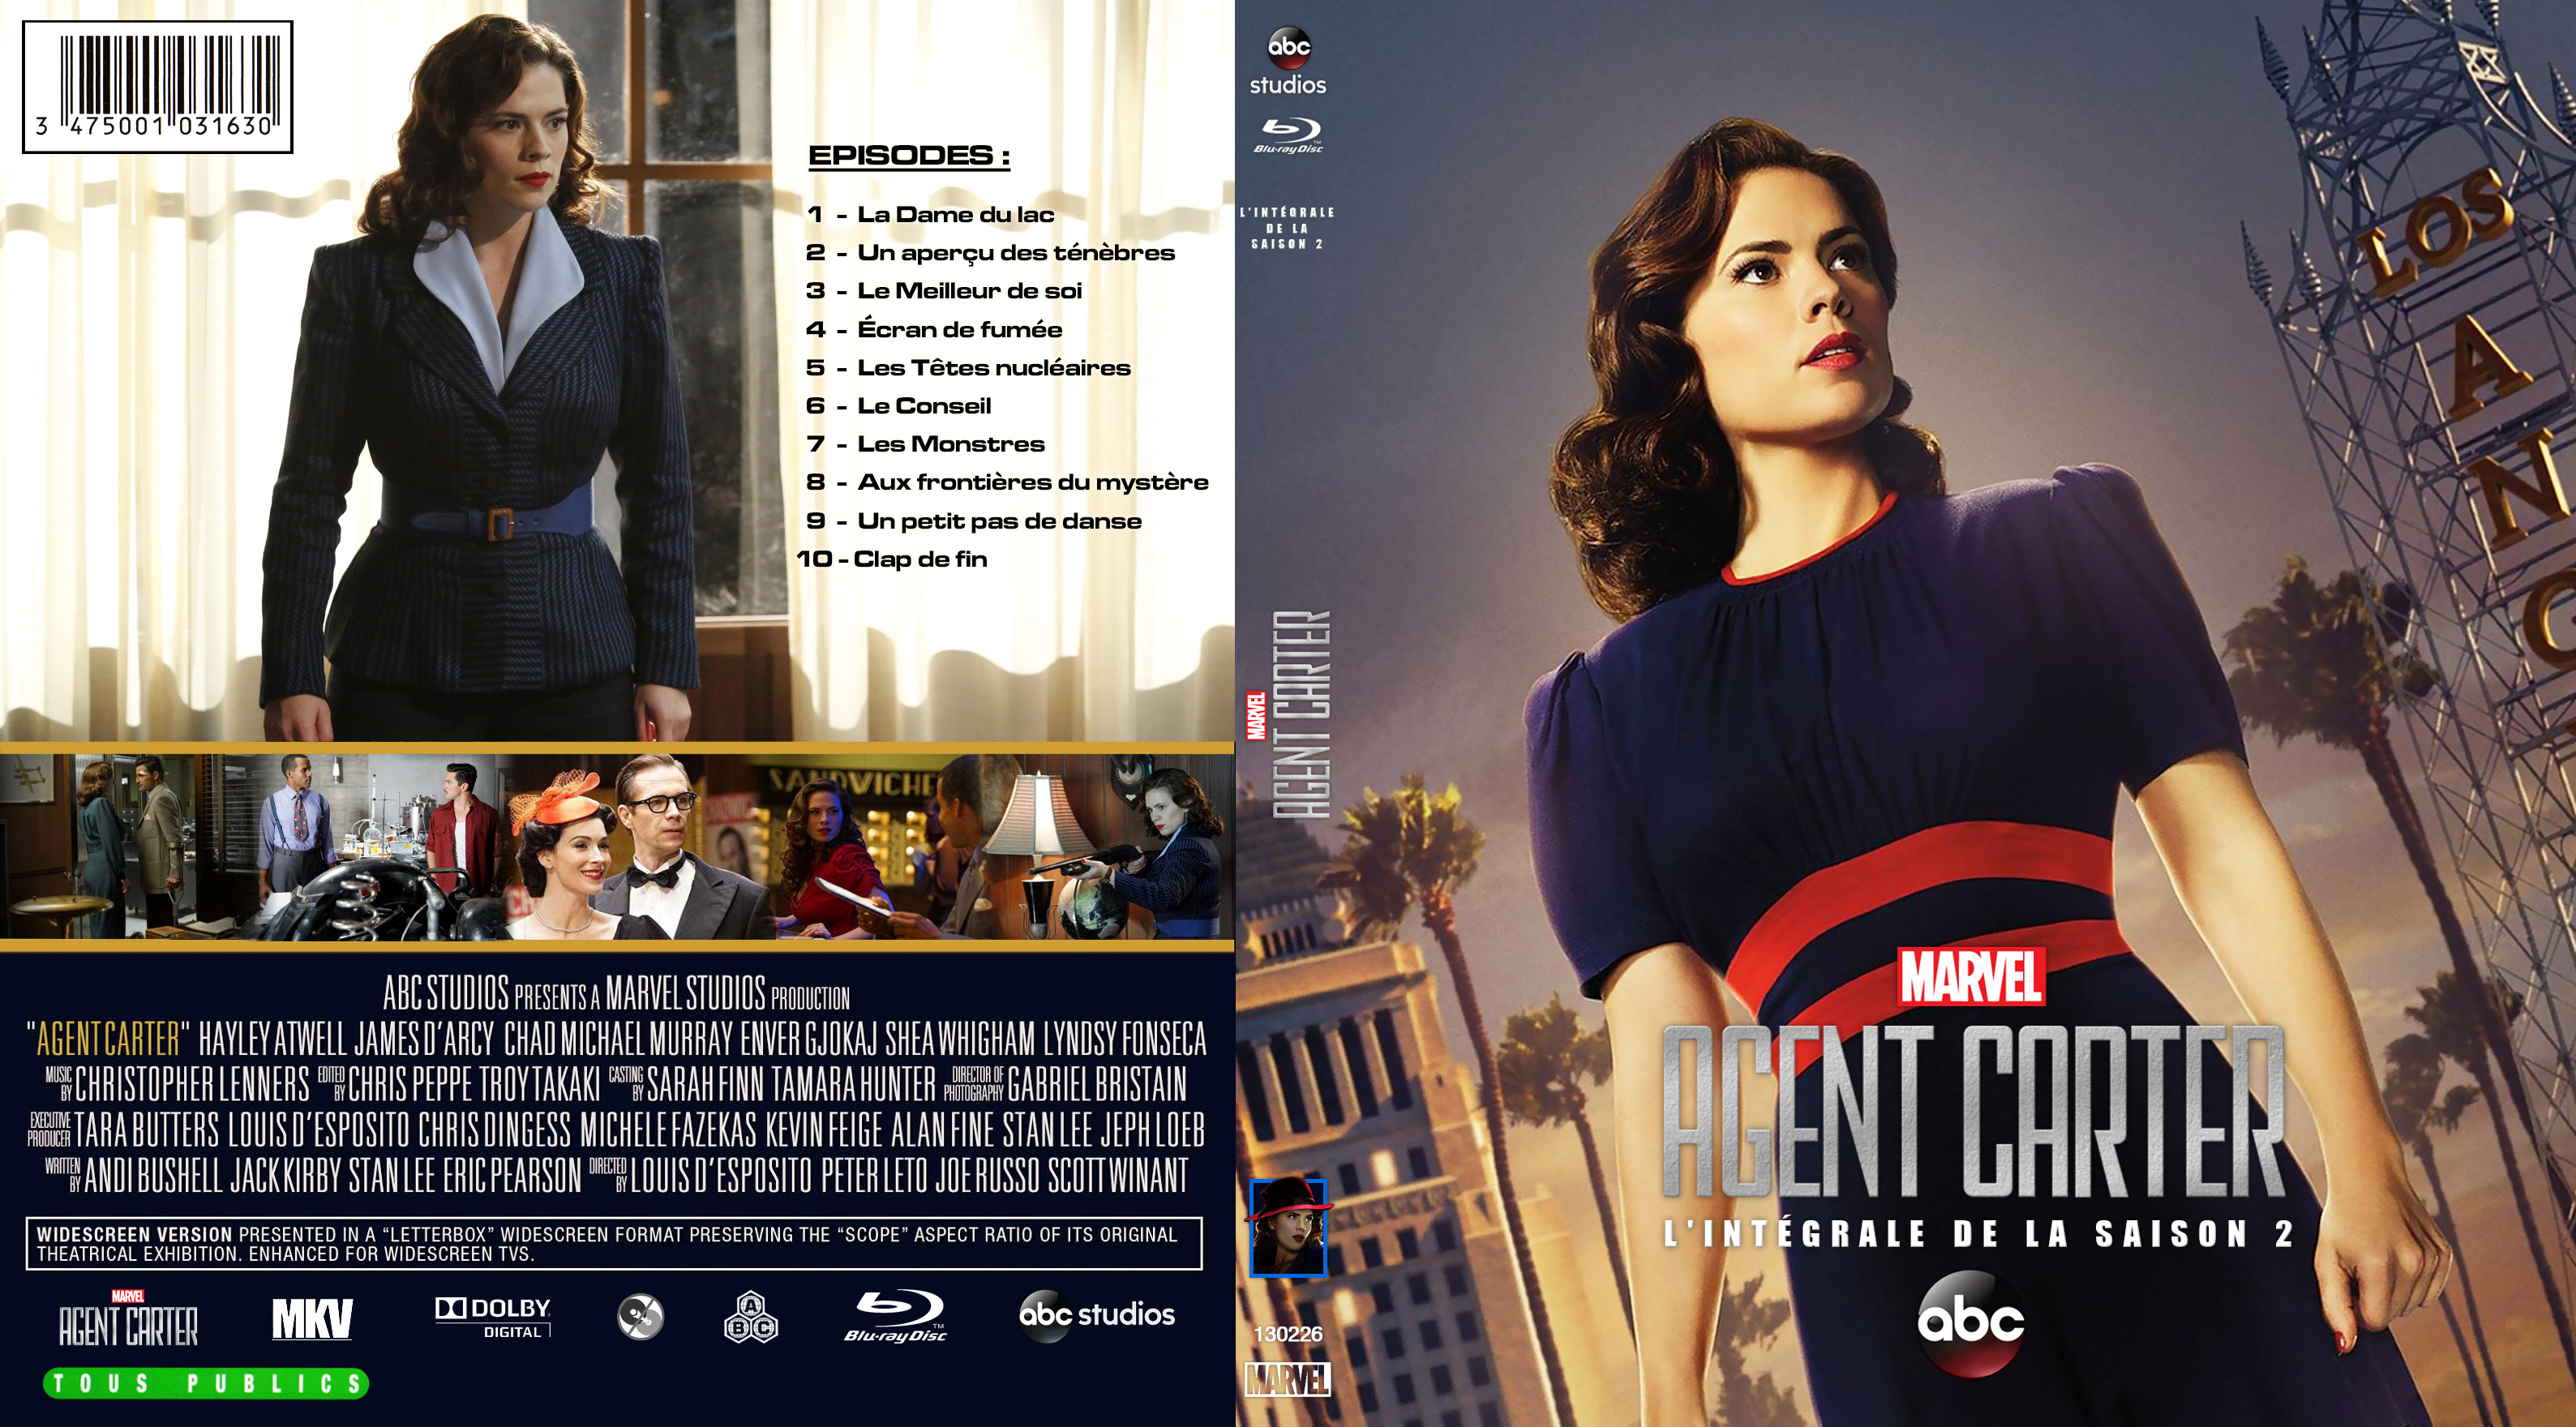 Jaquette DVD Agent Carter Saison 2 custom (BLU-RAY)